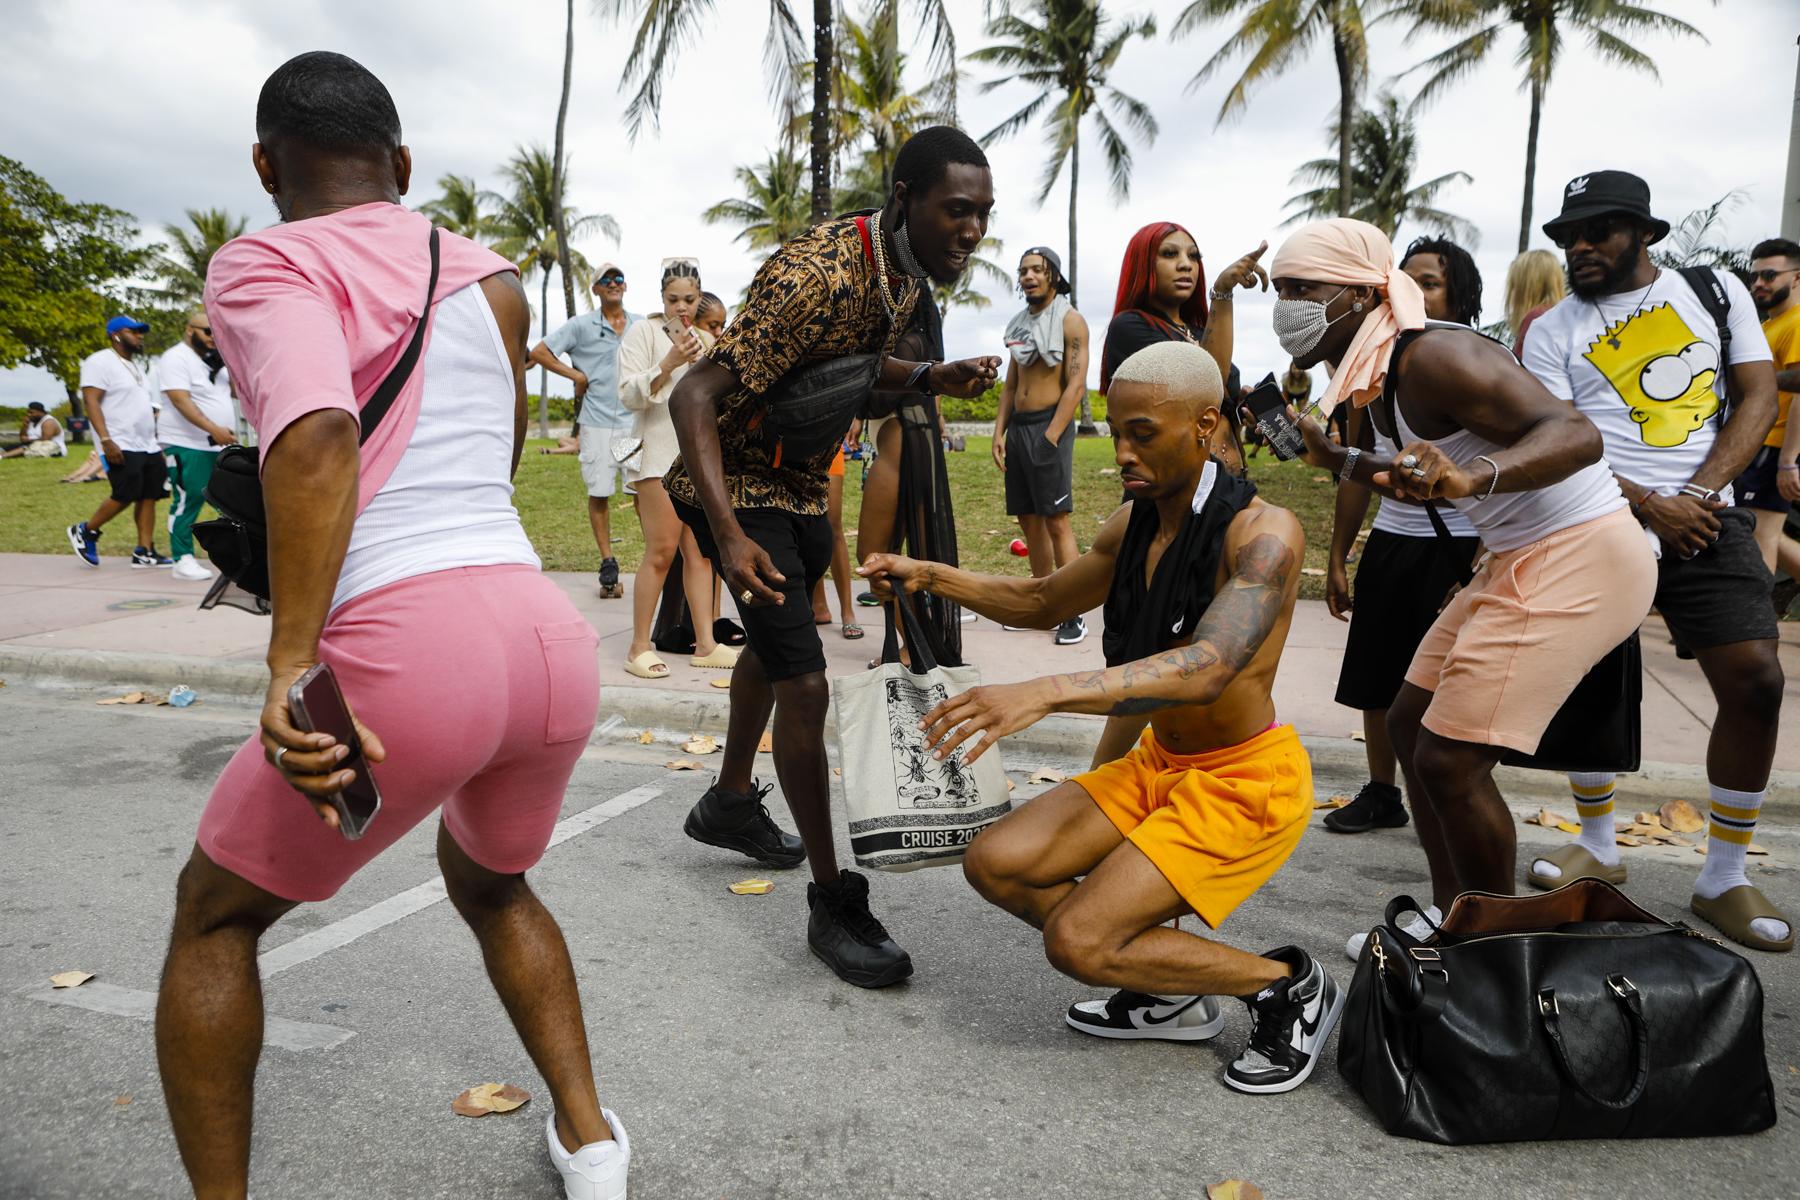 2021 Spring Break @ Miami Beach - People dance in the streets during Spring Break in Miami...